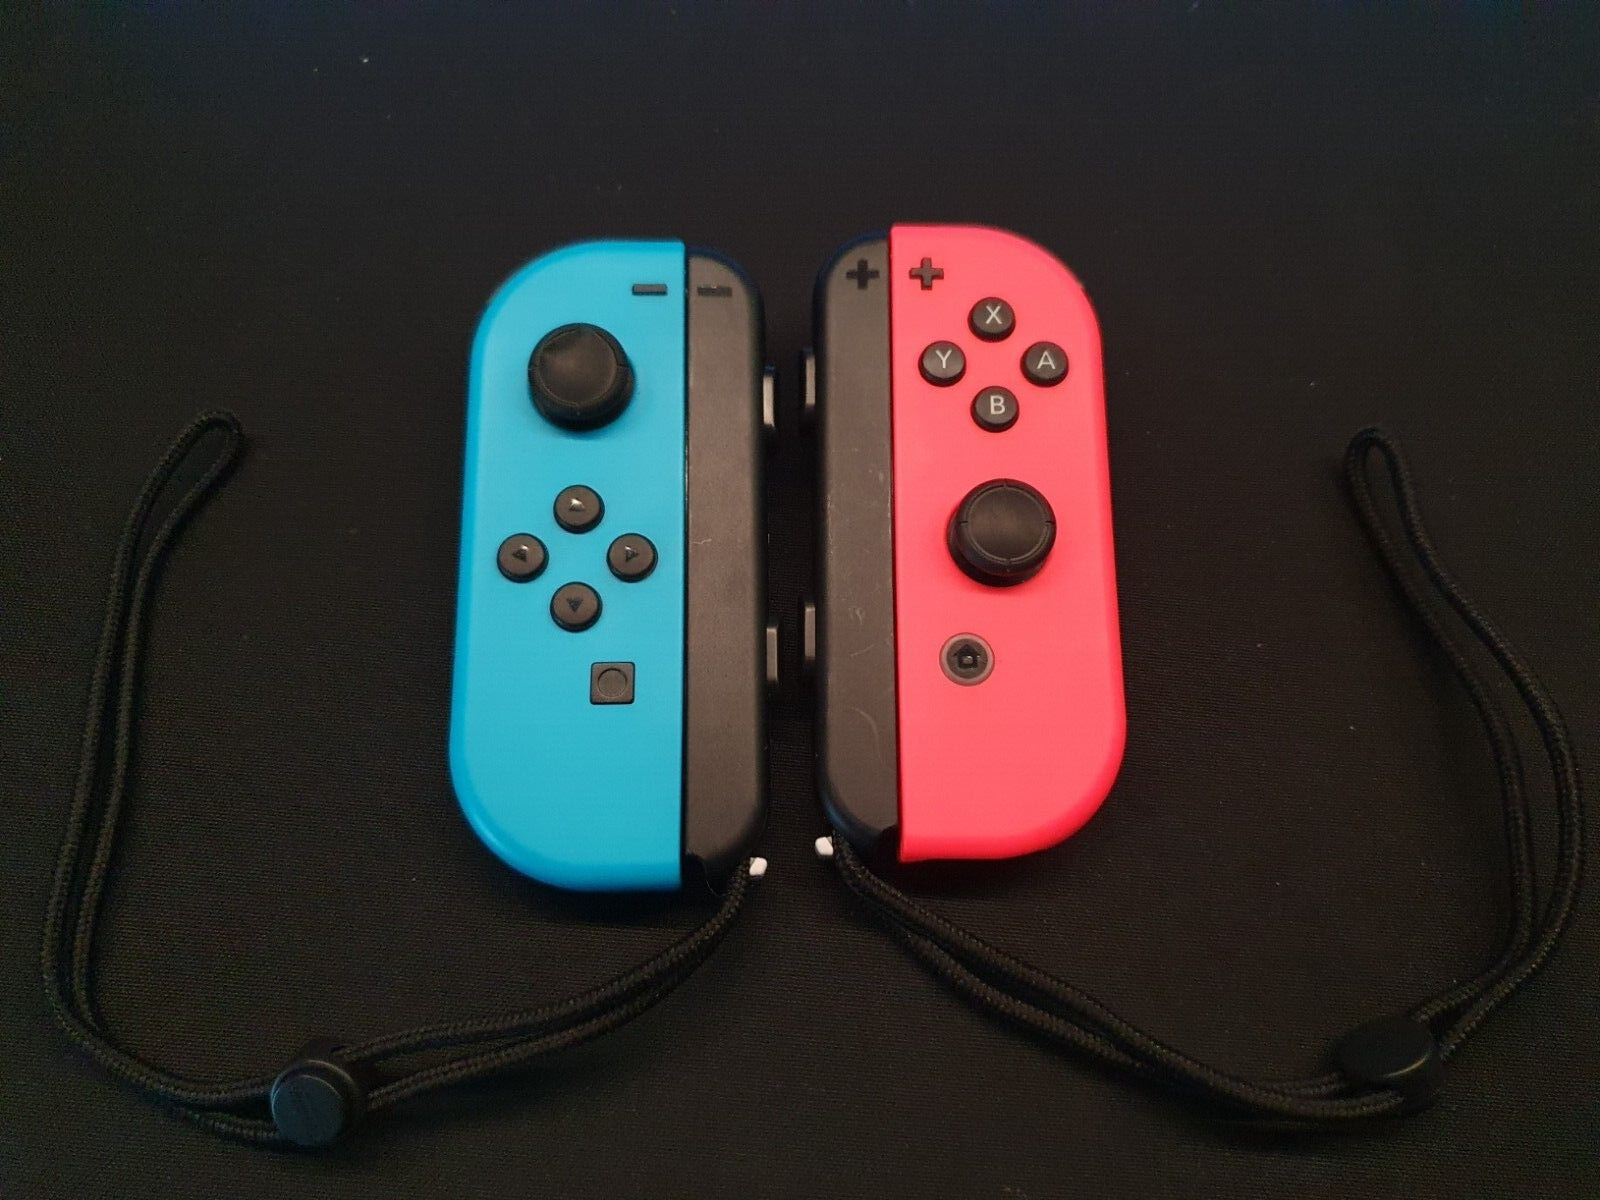 Paire De Joycon Nintendo Switch Officiels - plusieurs couleurs disponibles